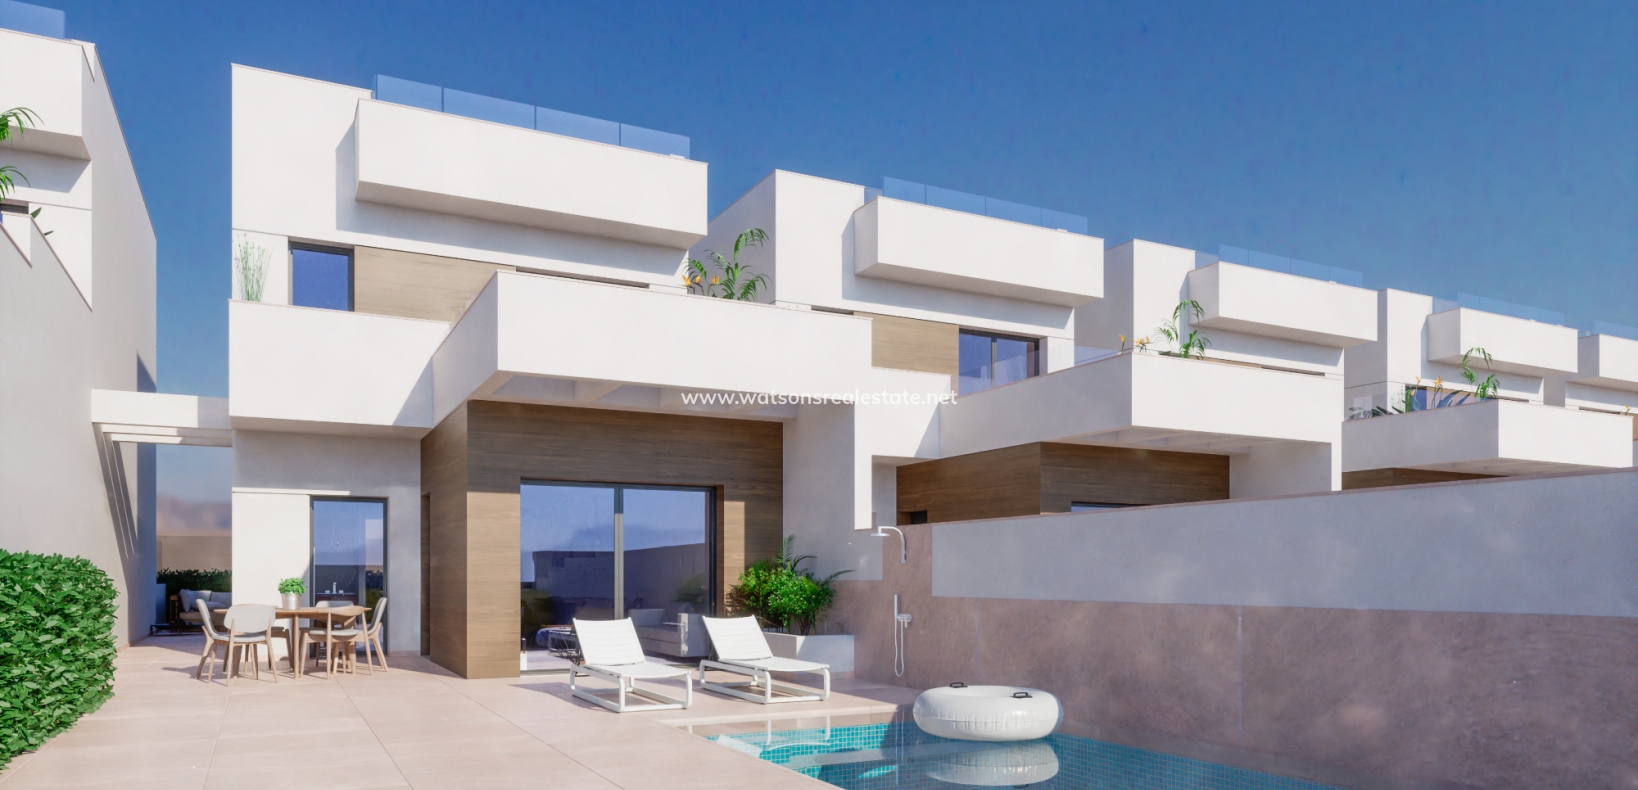 Nieuwbouw villa's te koop in Costa Blanca